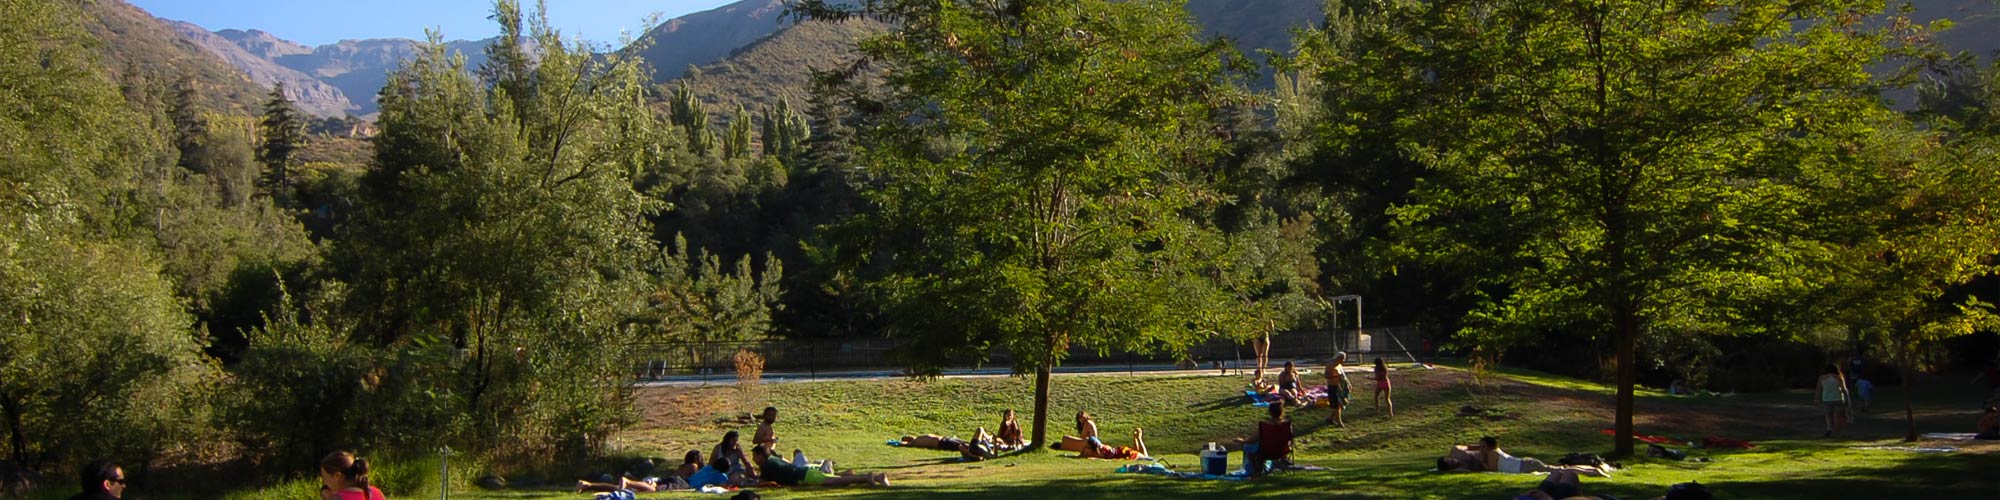 Parque Almendro, cabañas cajon del maipo, camping cajón del maipo, picnic cajón del maipo, piscinas, naturaleza, asado, atractivos